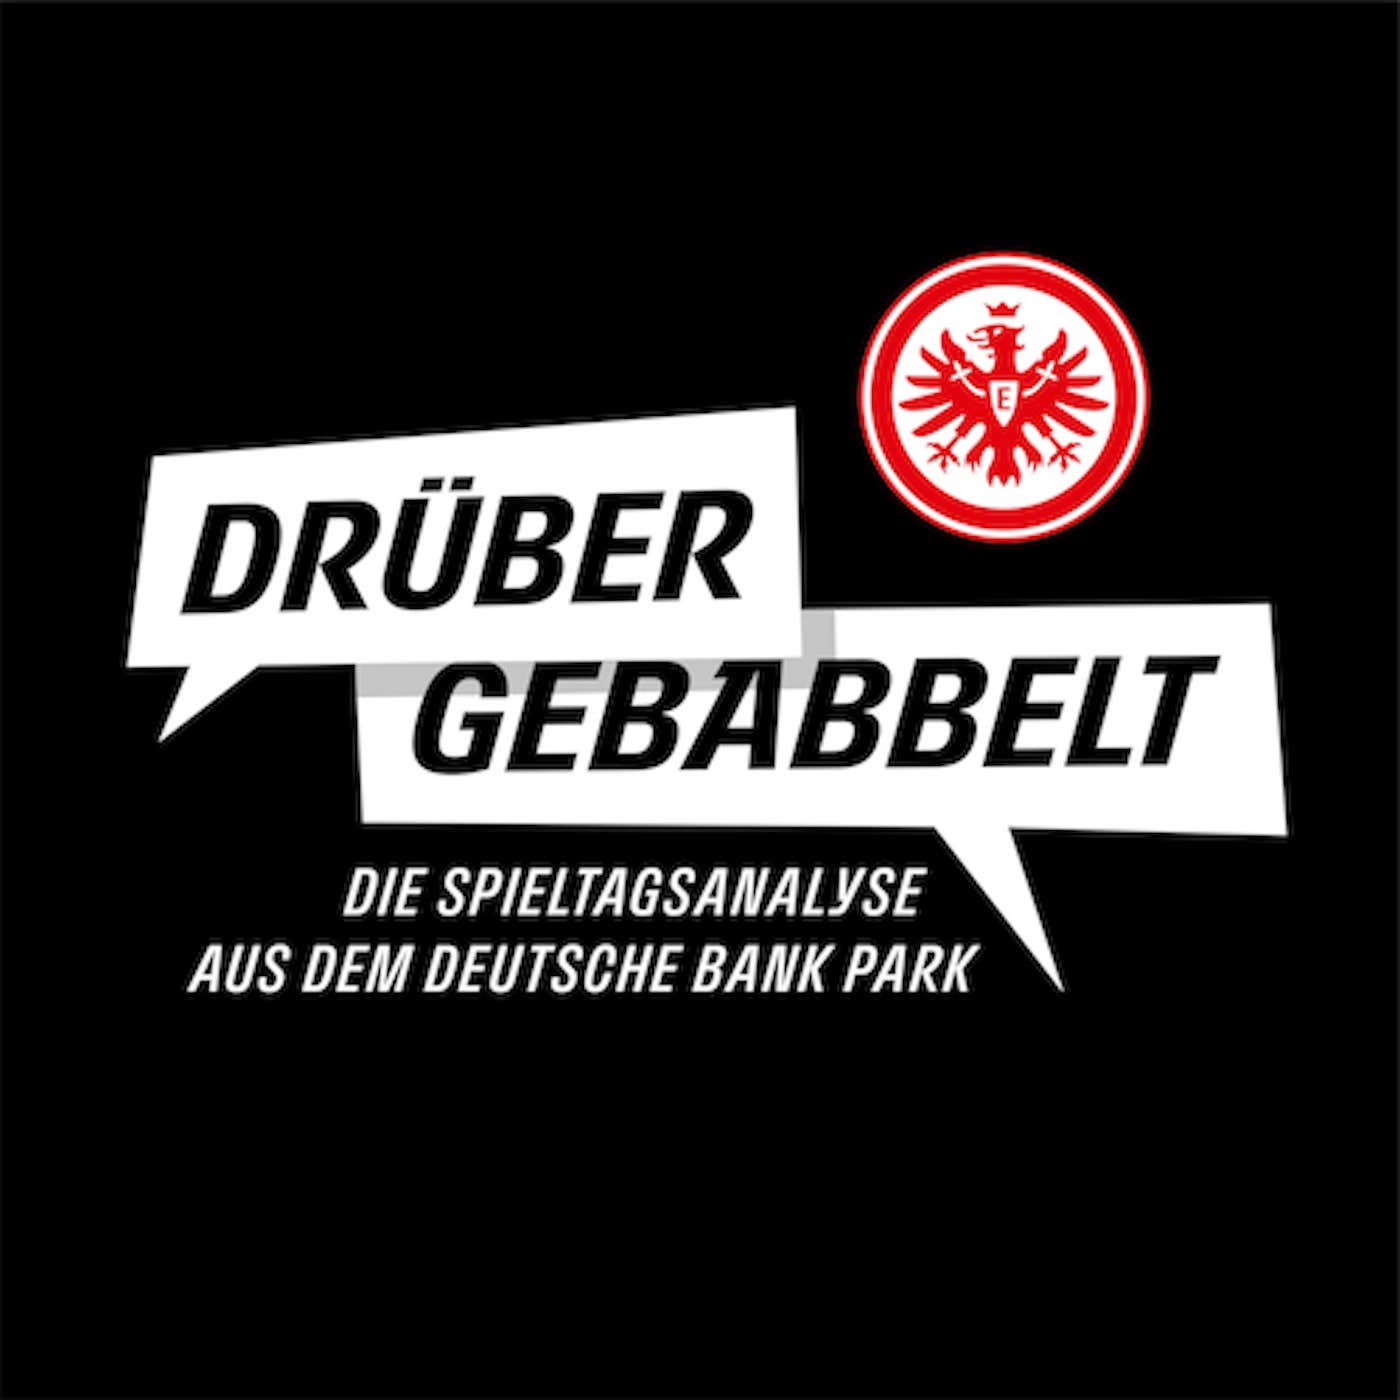 Punkt gerettet! I Drüber gebabbelt–die Spieltagsanalyse aus dem Deutsche Bank Park nach Wolfsburg